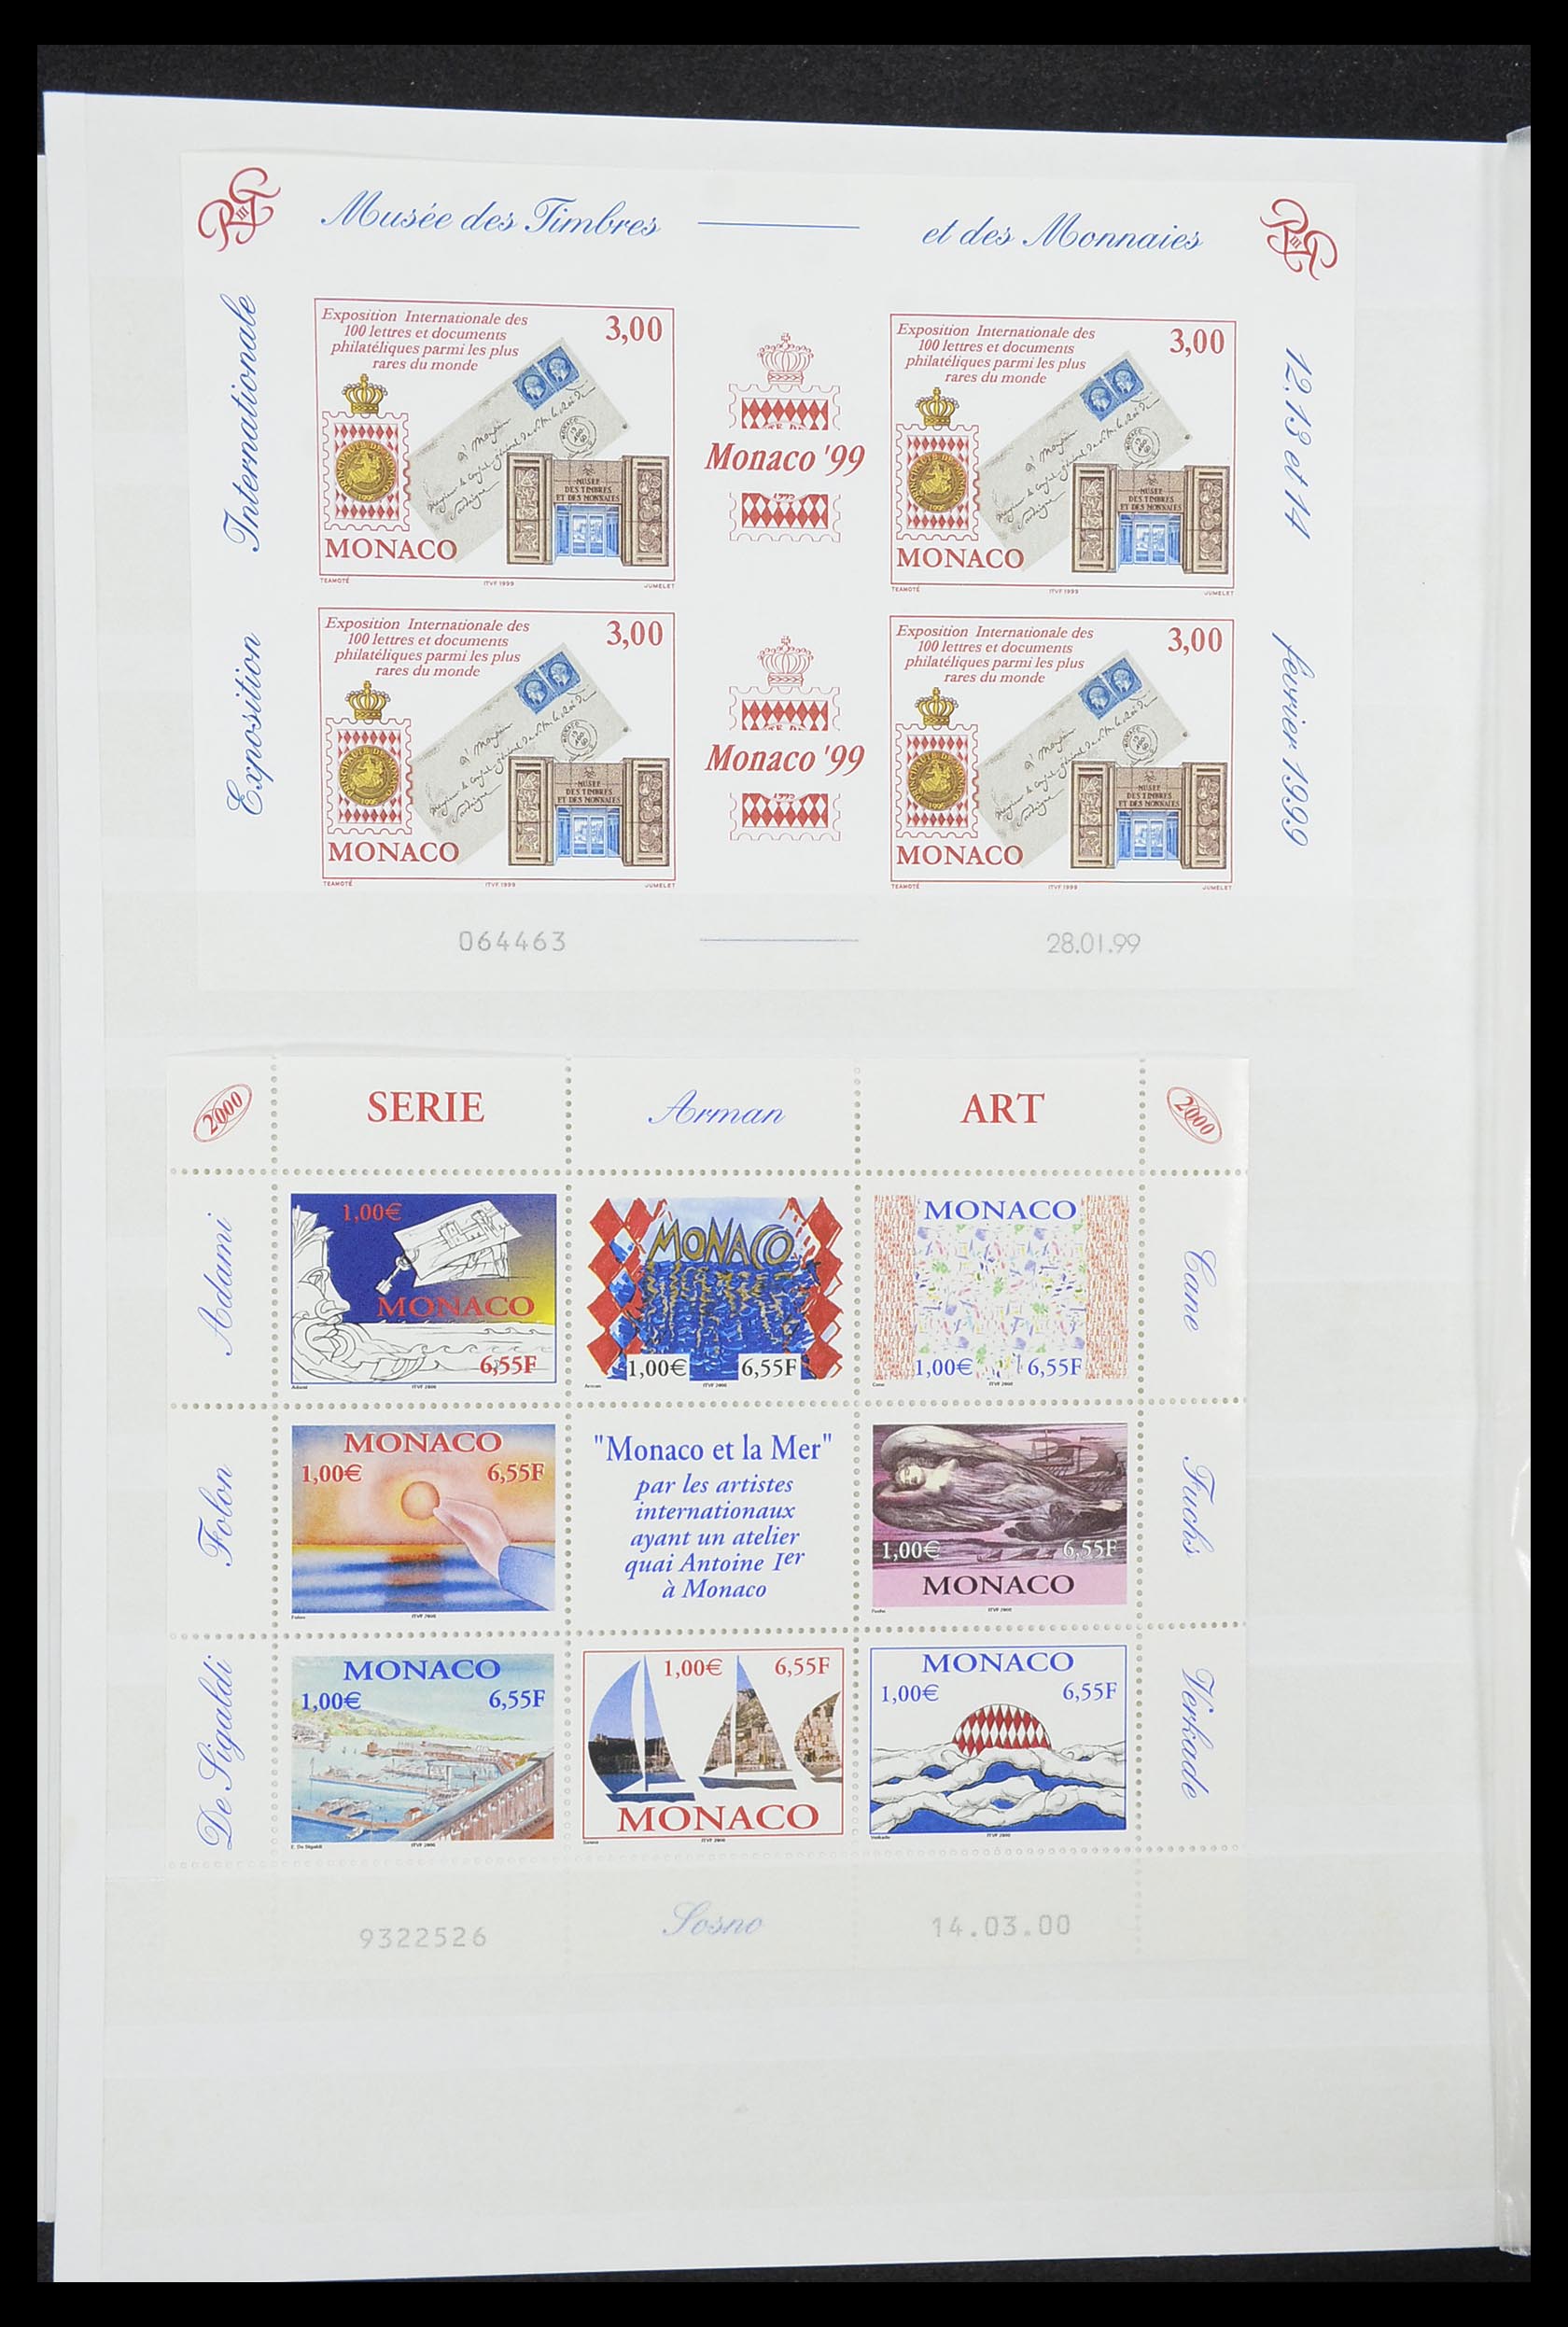 33833 034 - Stamp collection 33833 Monaco souvenir sheets 1979-2015.